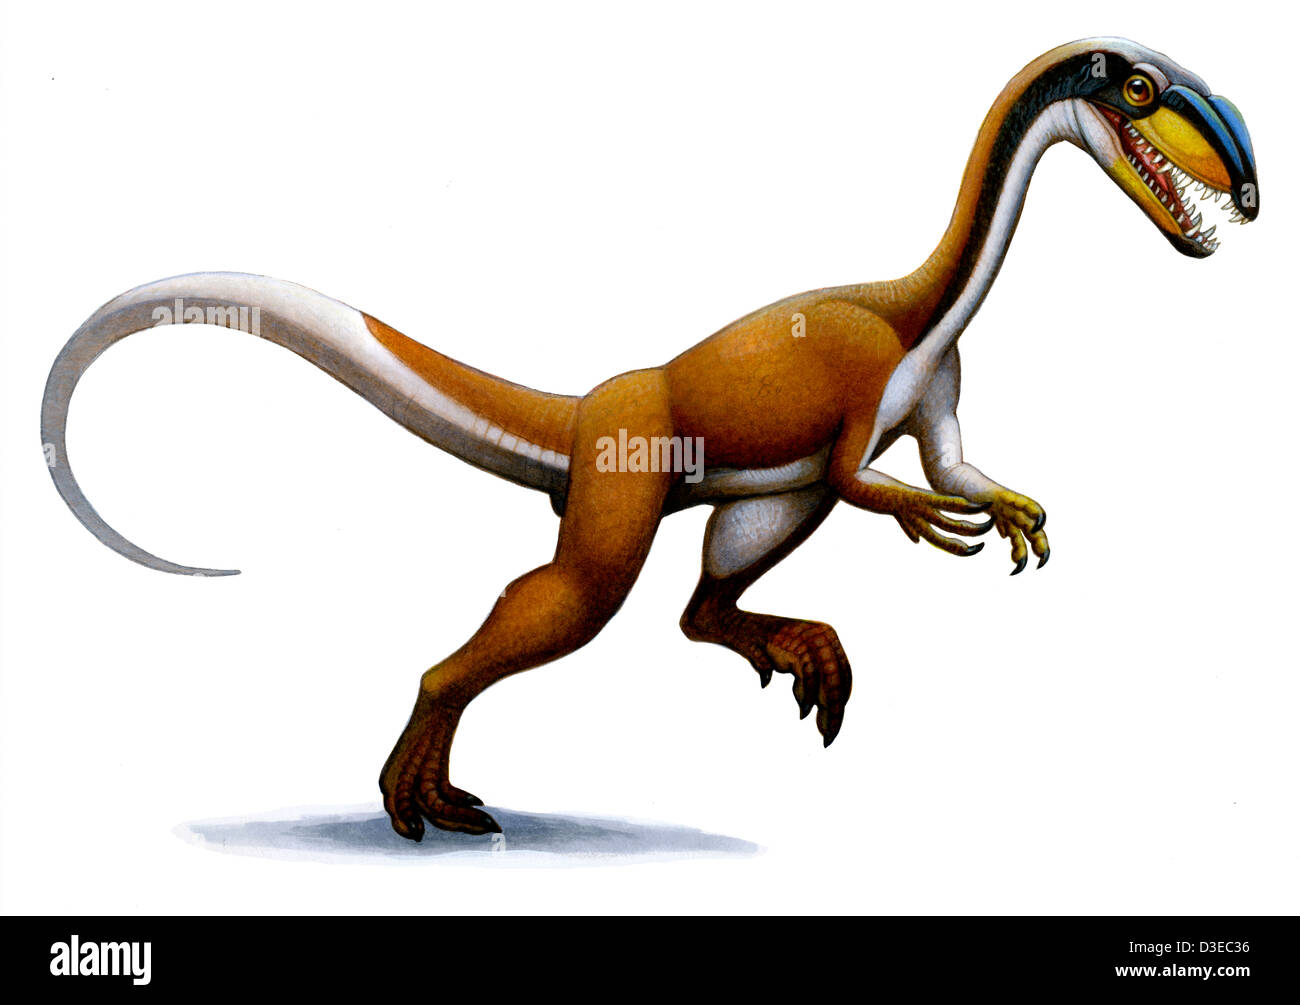 Megapnosaurus, a small dinosaur from the early Jurassic. Stock Photo